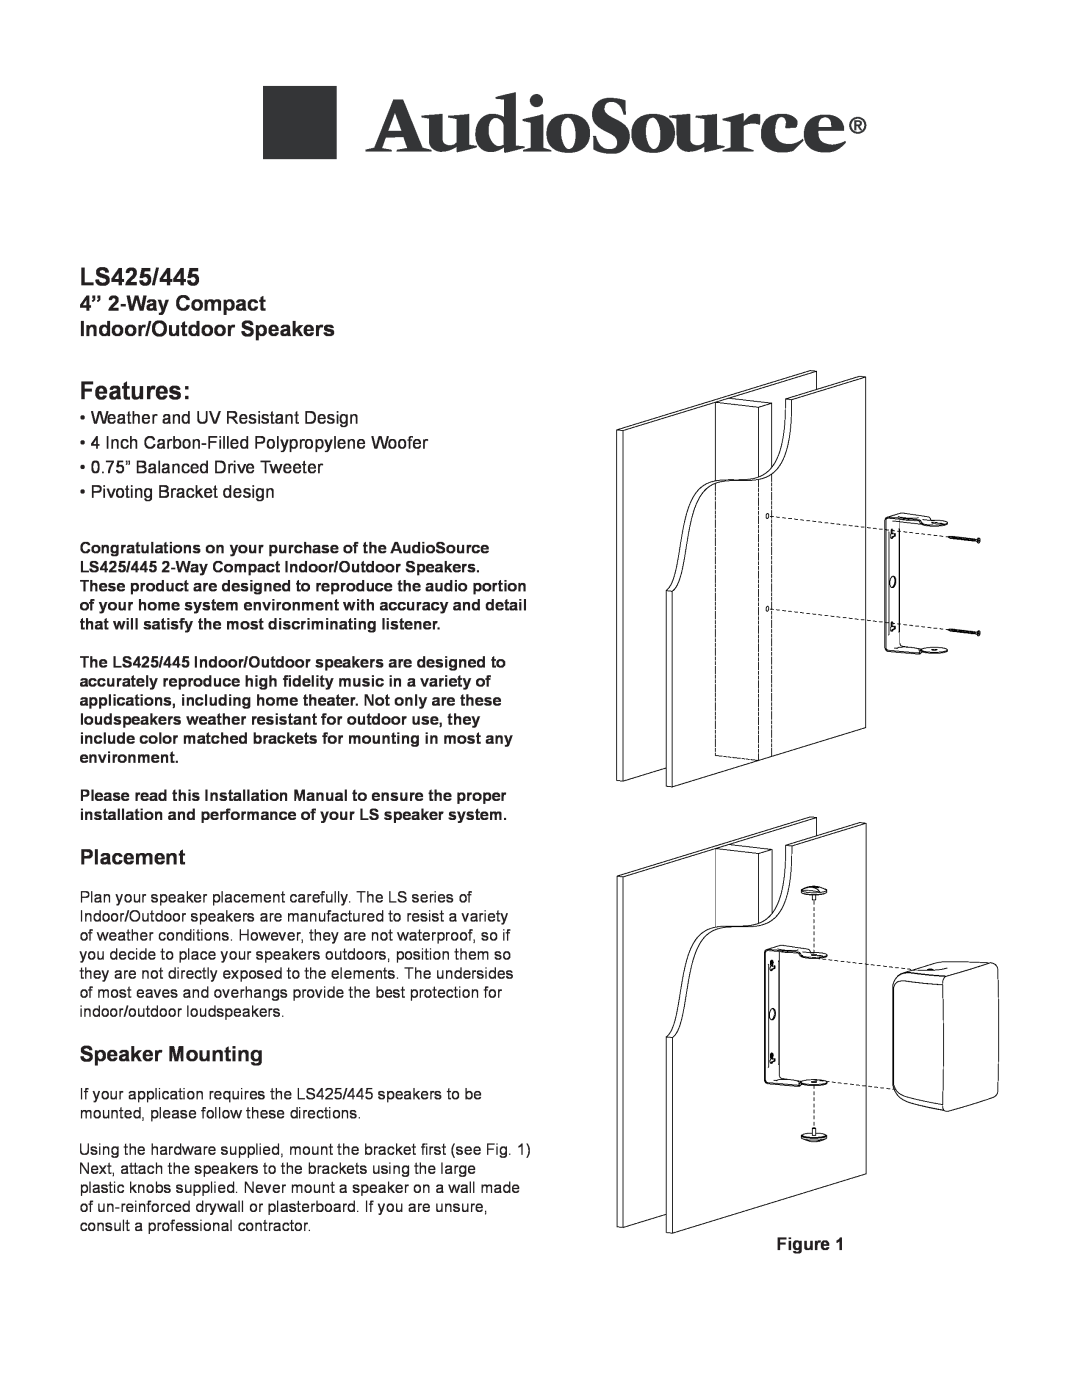 AudioSource 2-Way Compact Indoor/Outdoor Speakers installation manual 4” 2-WayCompact Indoor/Outdoor Speakers, Placement 